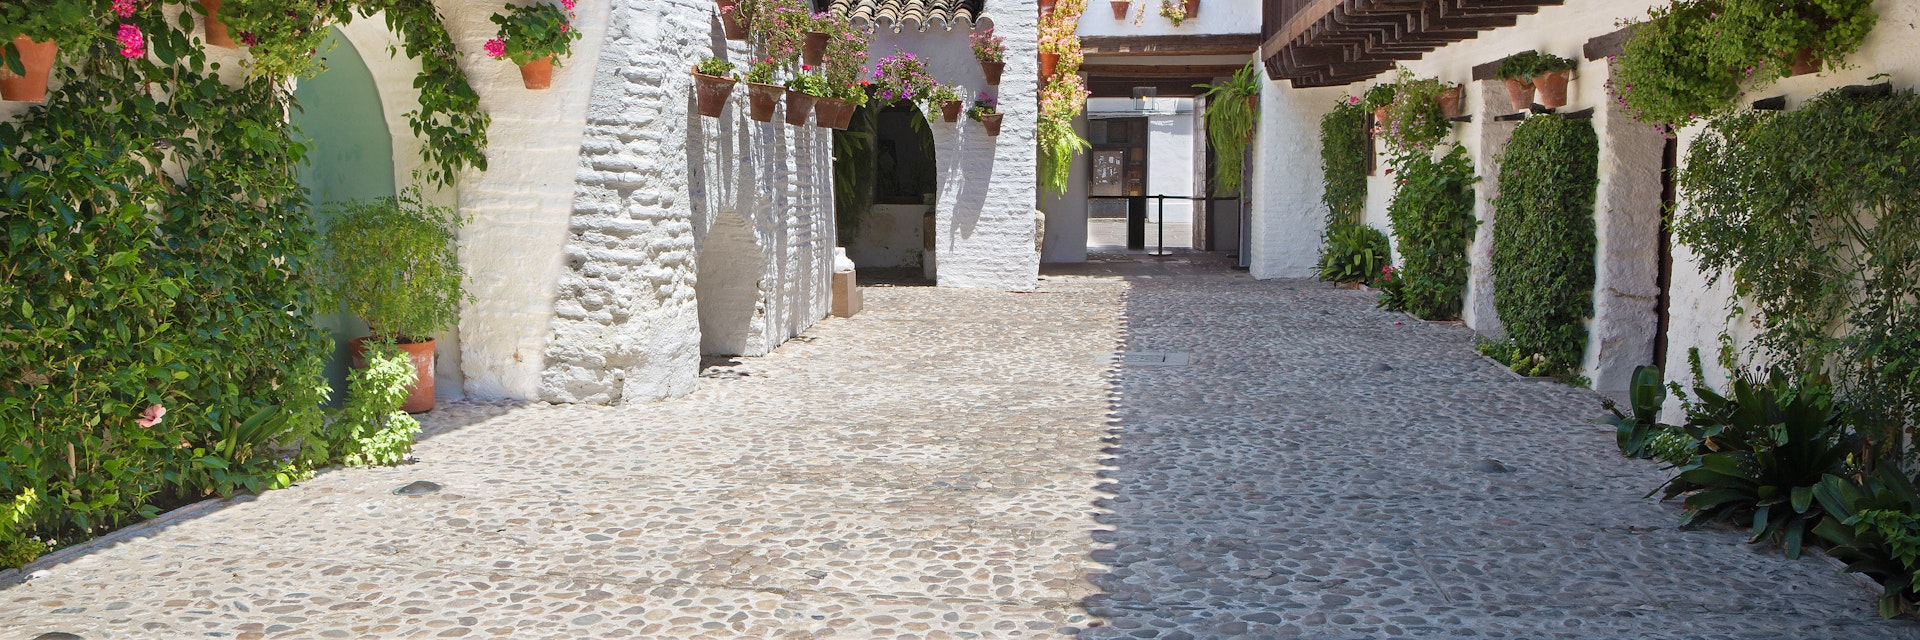 The yard (pacio) of Centro de Flamenco Fosforito or Musuem of Flamenco.